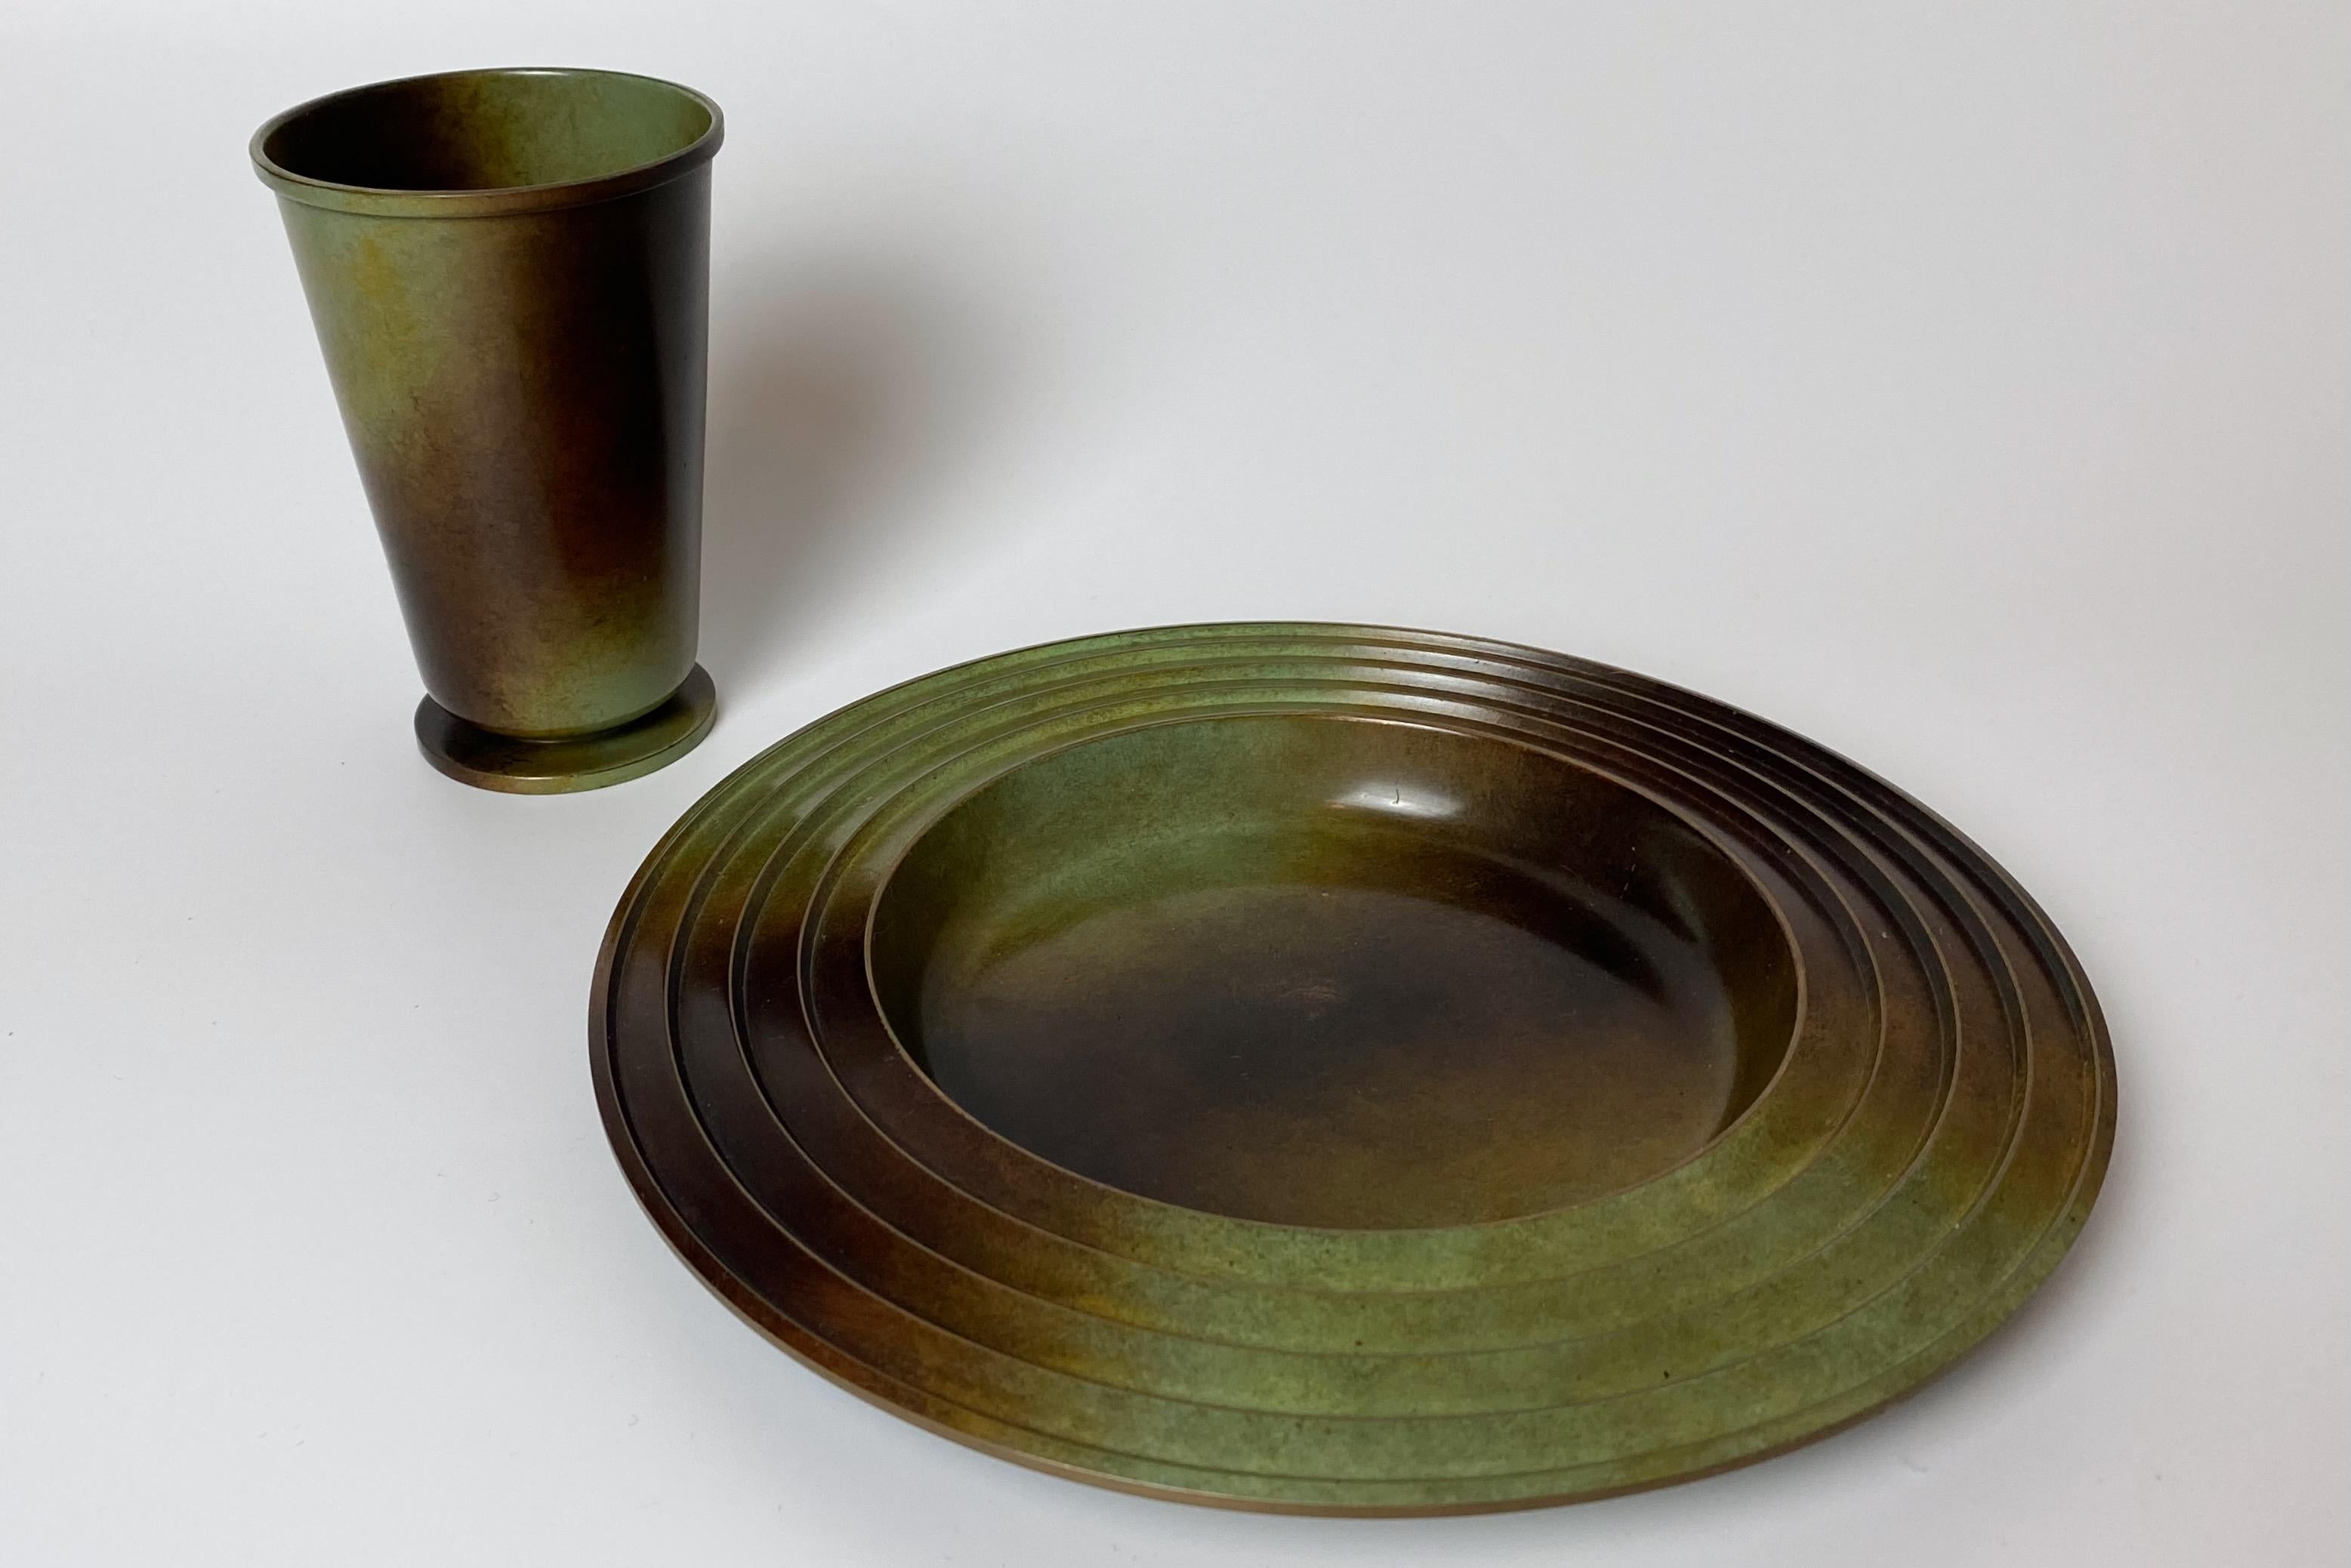 Schönes Set aus einem Teller und einer Vase aus patinierter Bronze von Ystad Brons, Schweden, aus den 1930er Jahren. Der Teller wurde von Ivar Ålenius-Björk entworfen. Sehr guter Zustand mit kleinen Gebrauchsspuren.

Land: Schweden

Hersteller: